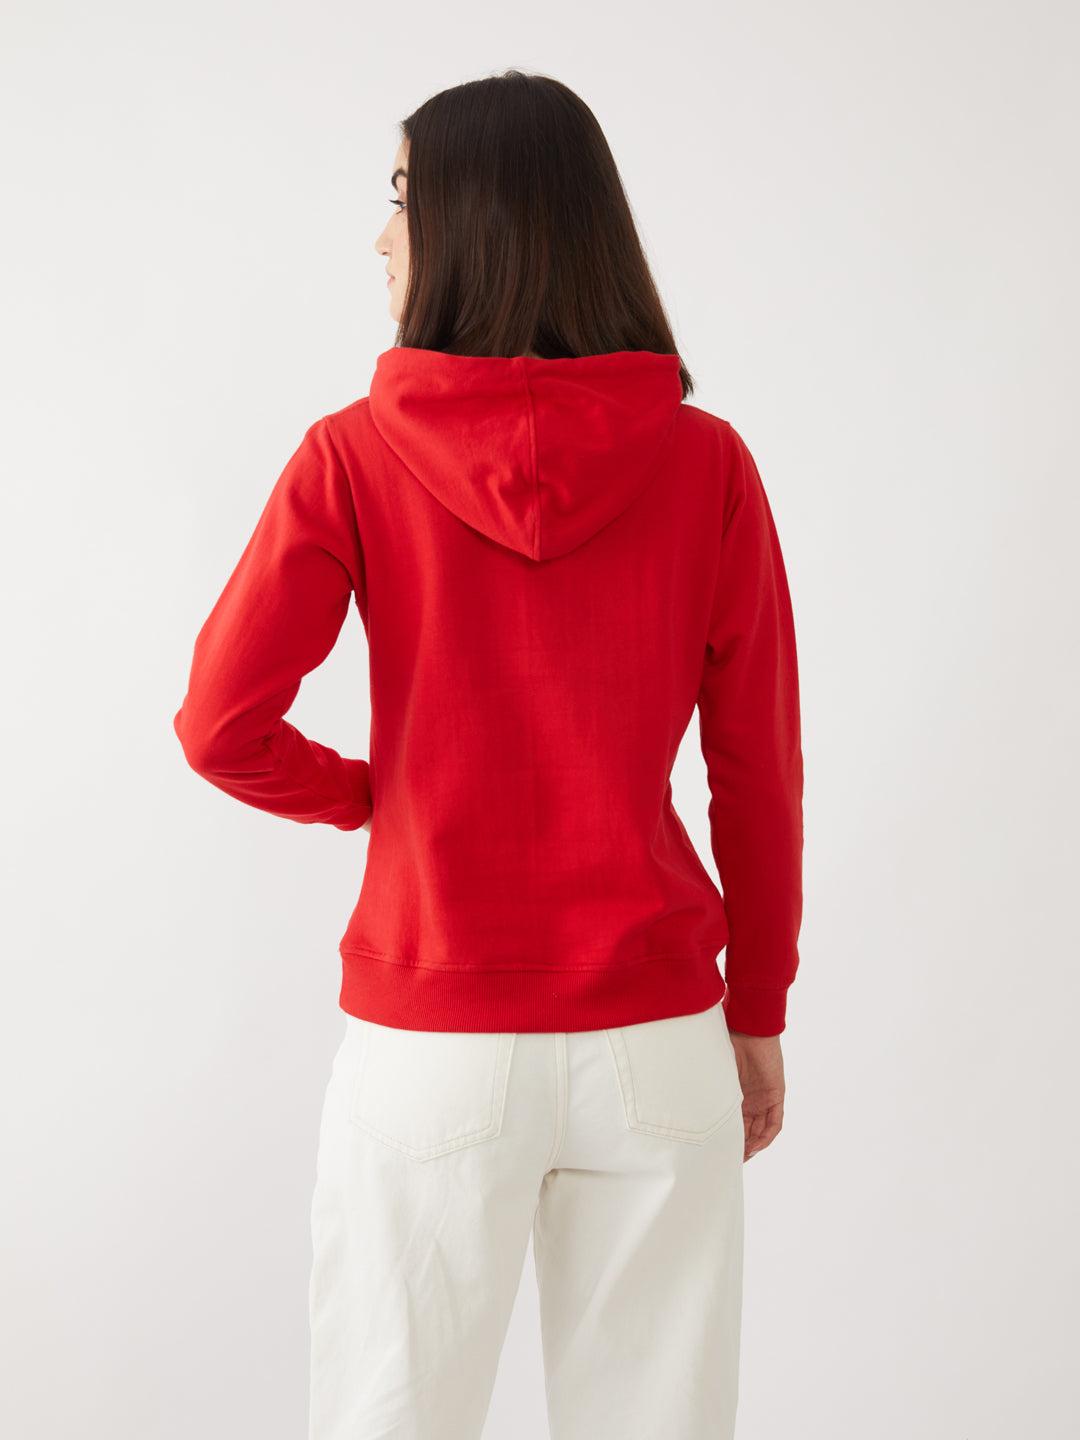 red-solid-sweatshirt-for-women